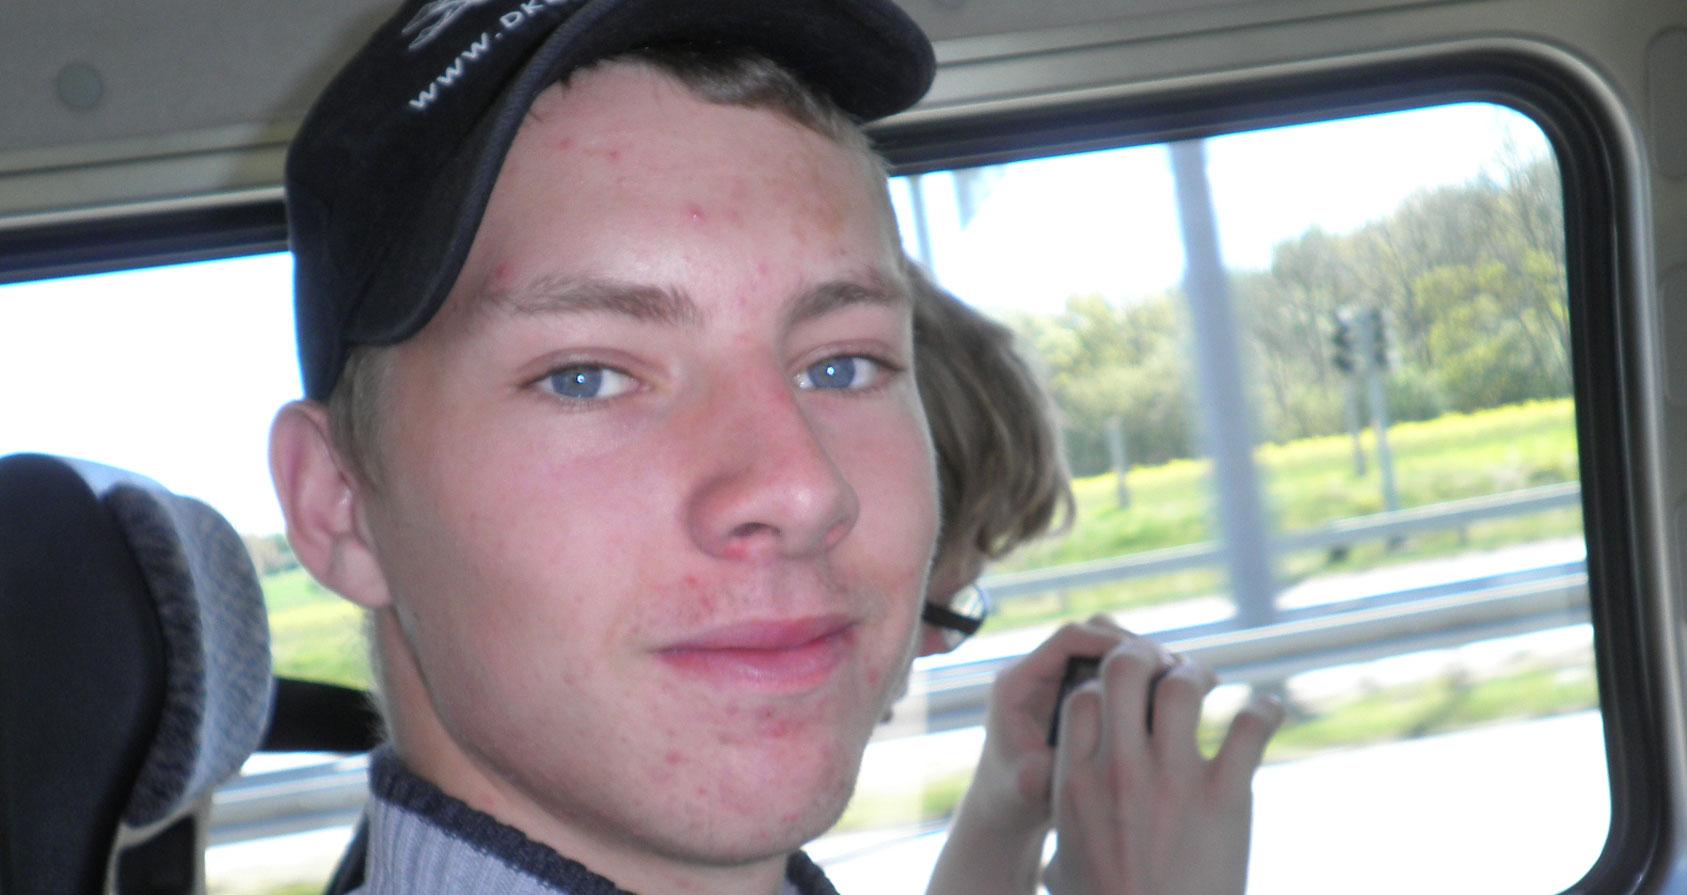 FÖRSVUNNEN Den 19-åringe dansken har varit saknad i Norrbottensfjällen sedan i onsdags. Ett trettiotal personer har sökt efter honom, men utan framgång.